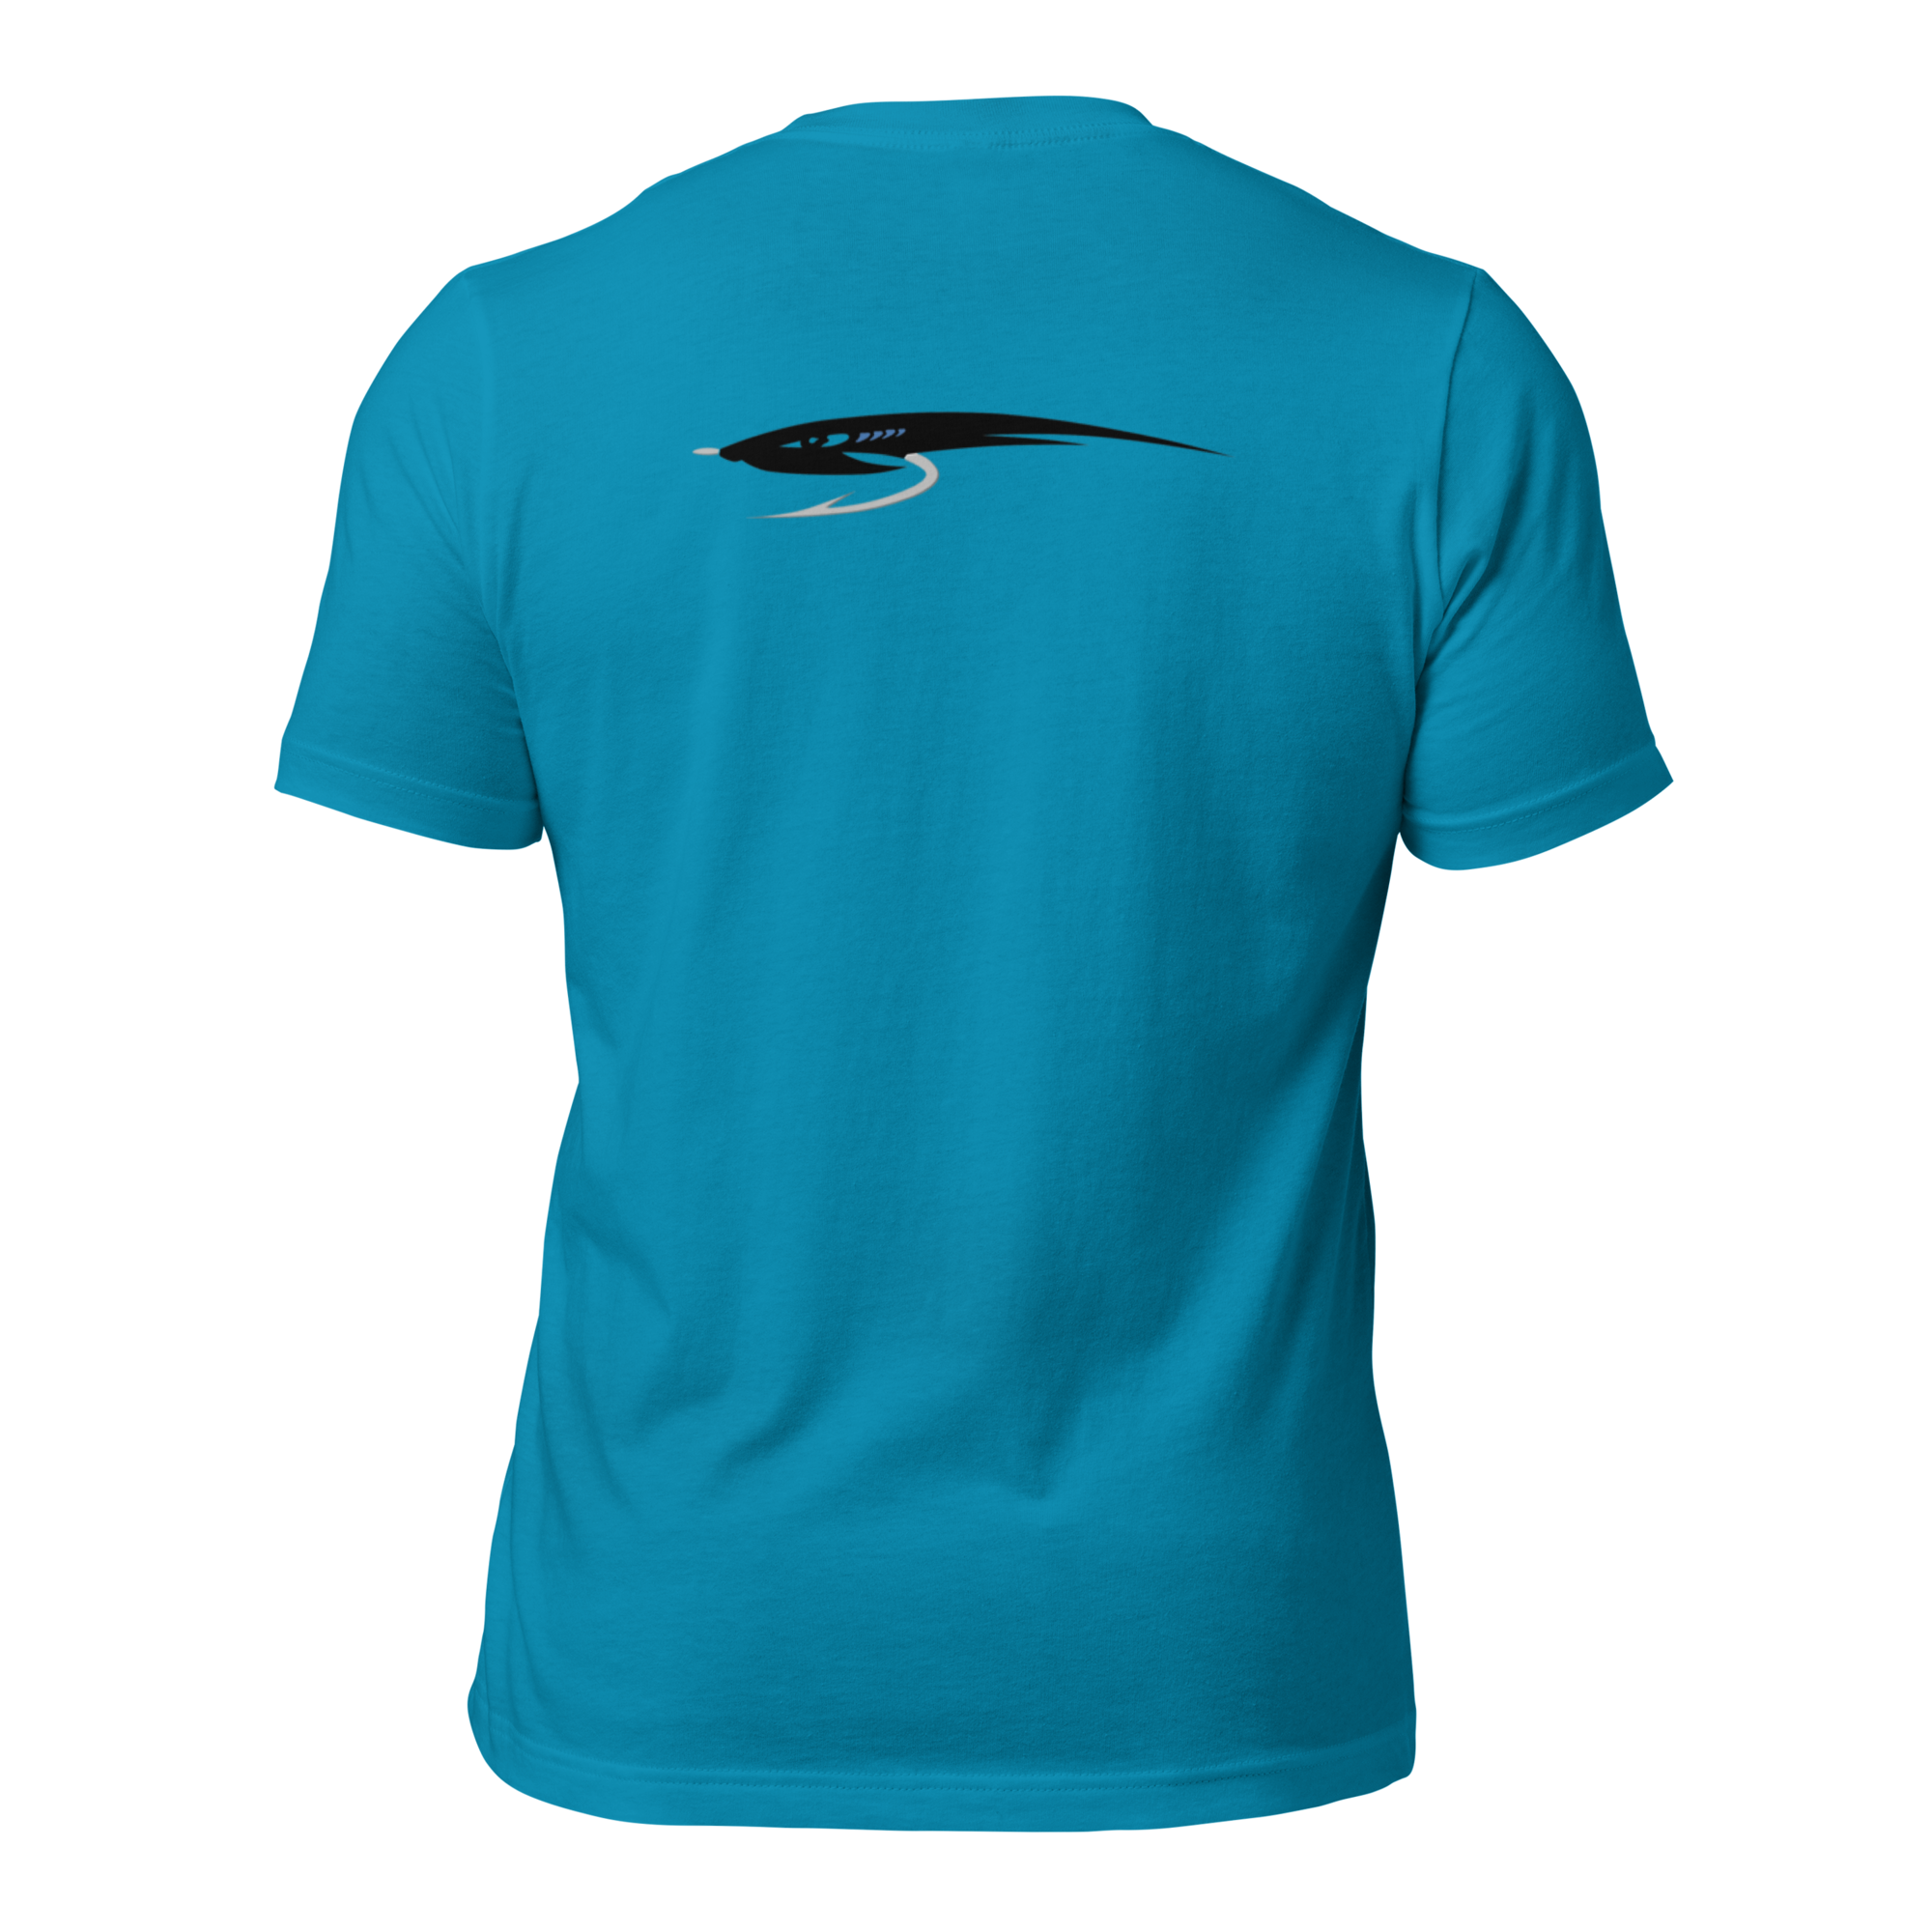 unisex-staple-t-shirt-aqua-back-653fc8c0578ec_d1deb8cc-3001-4be8-a8d1-5f4f2a1b5651.png